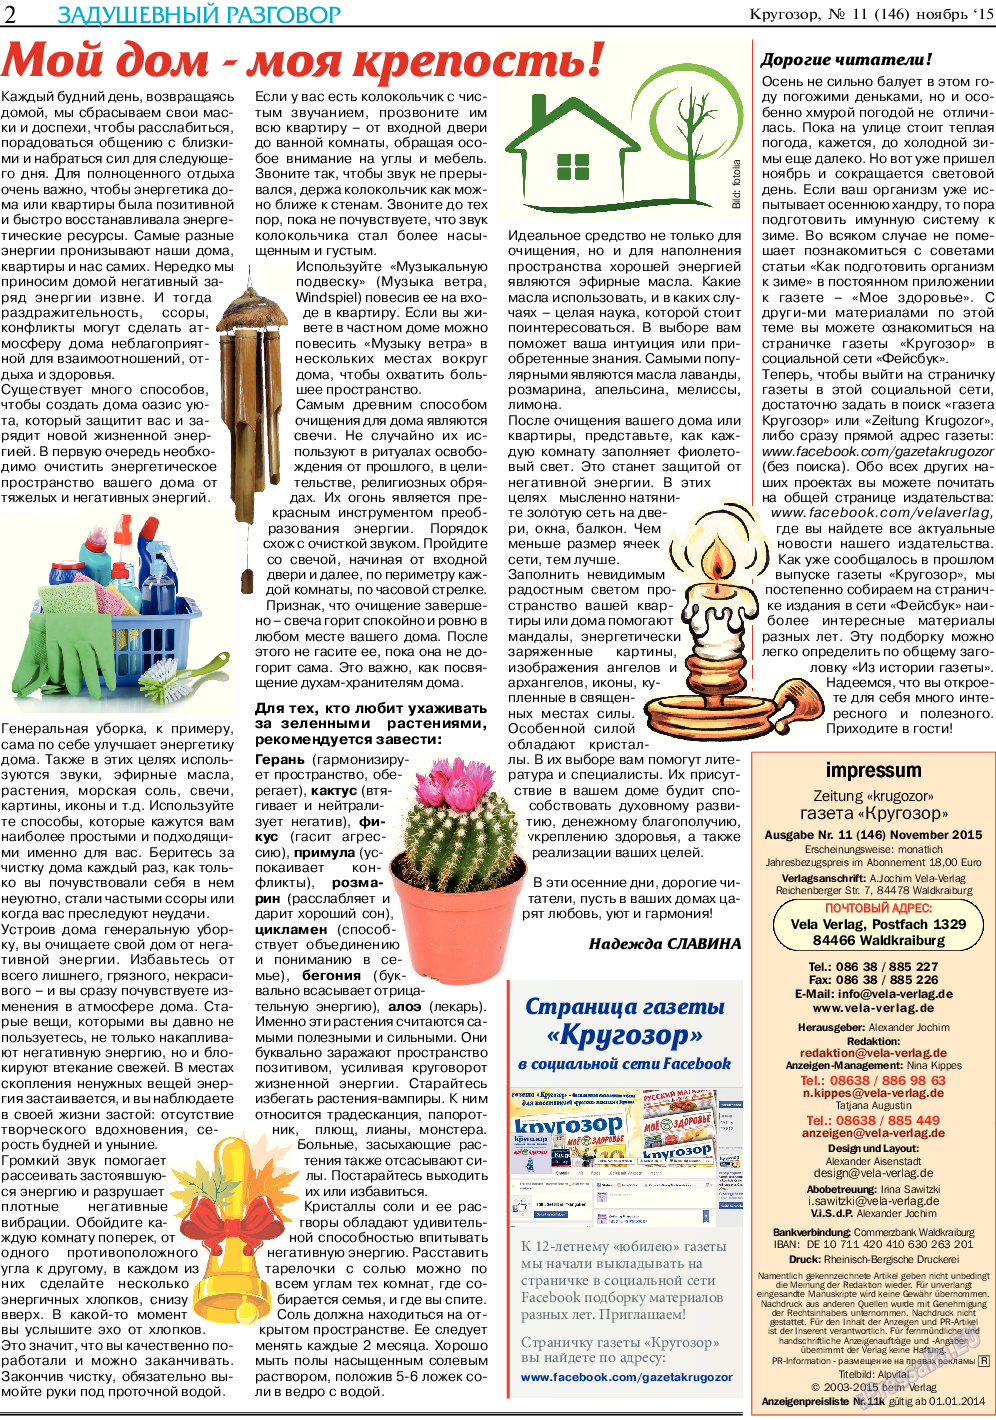 Кругозор (газета). 2015 год, номер 11, стр. 2